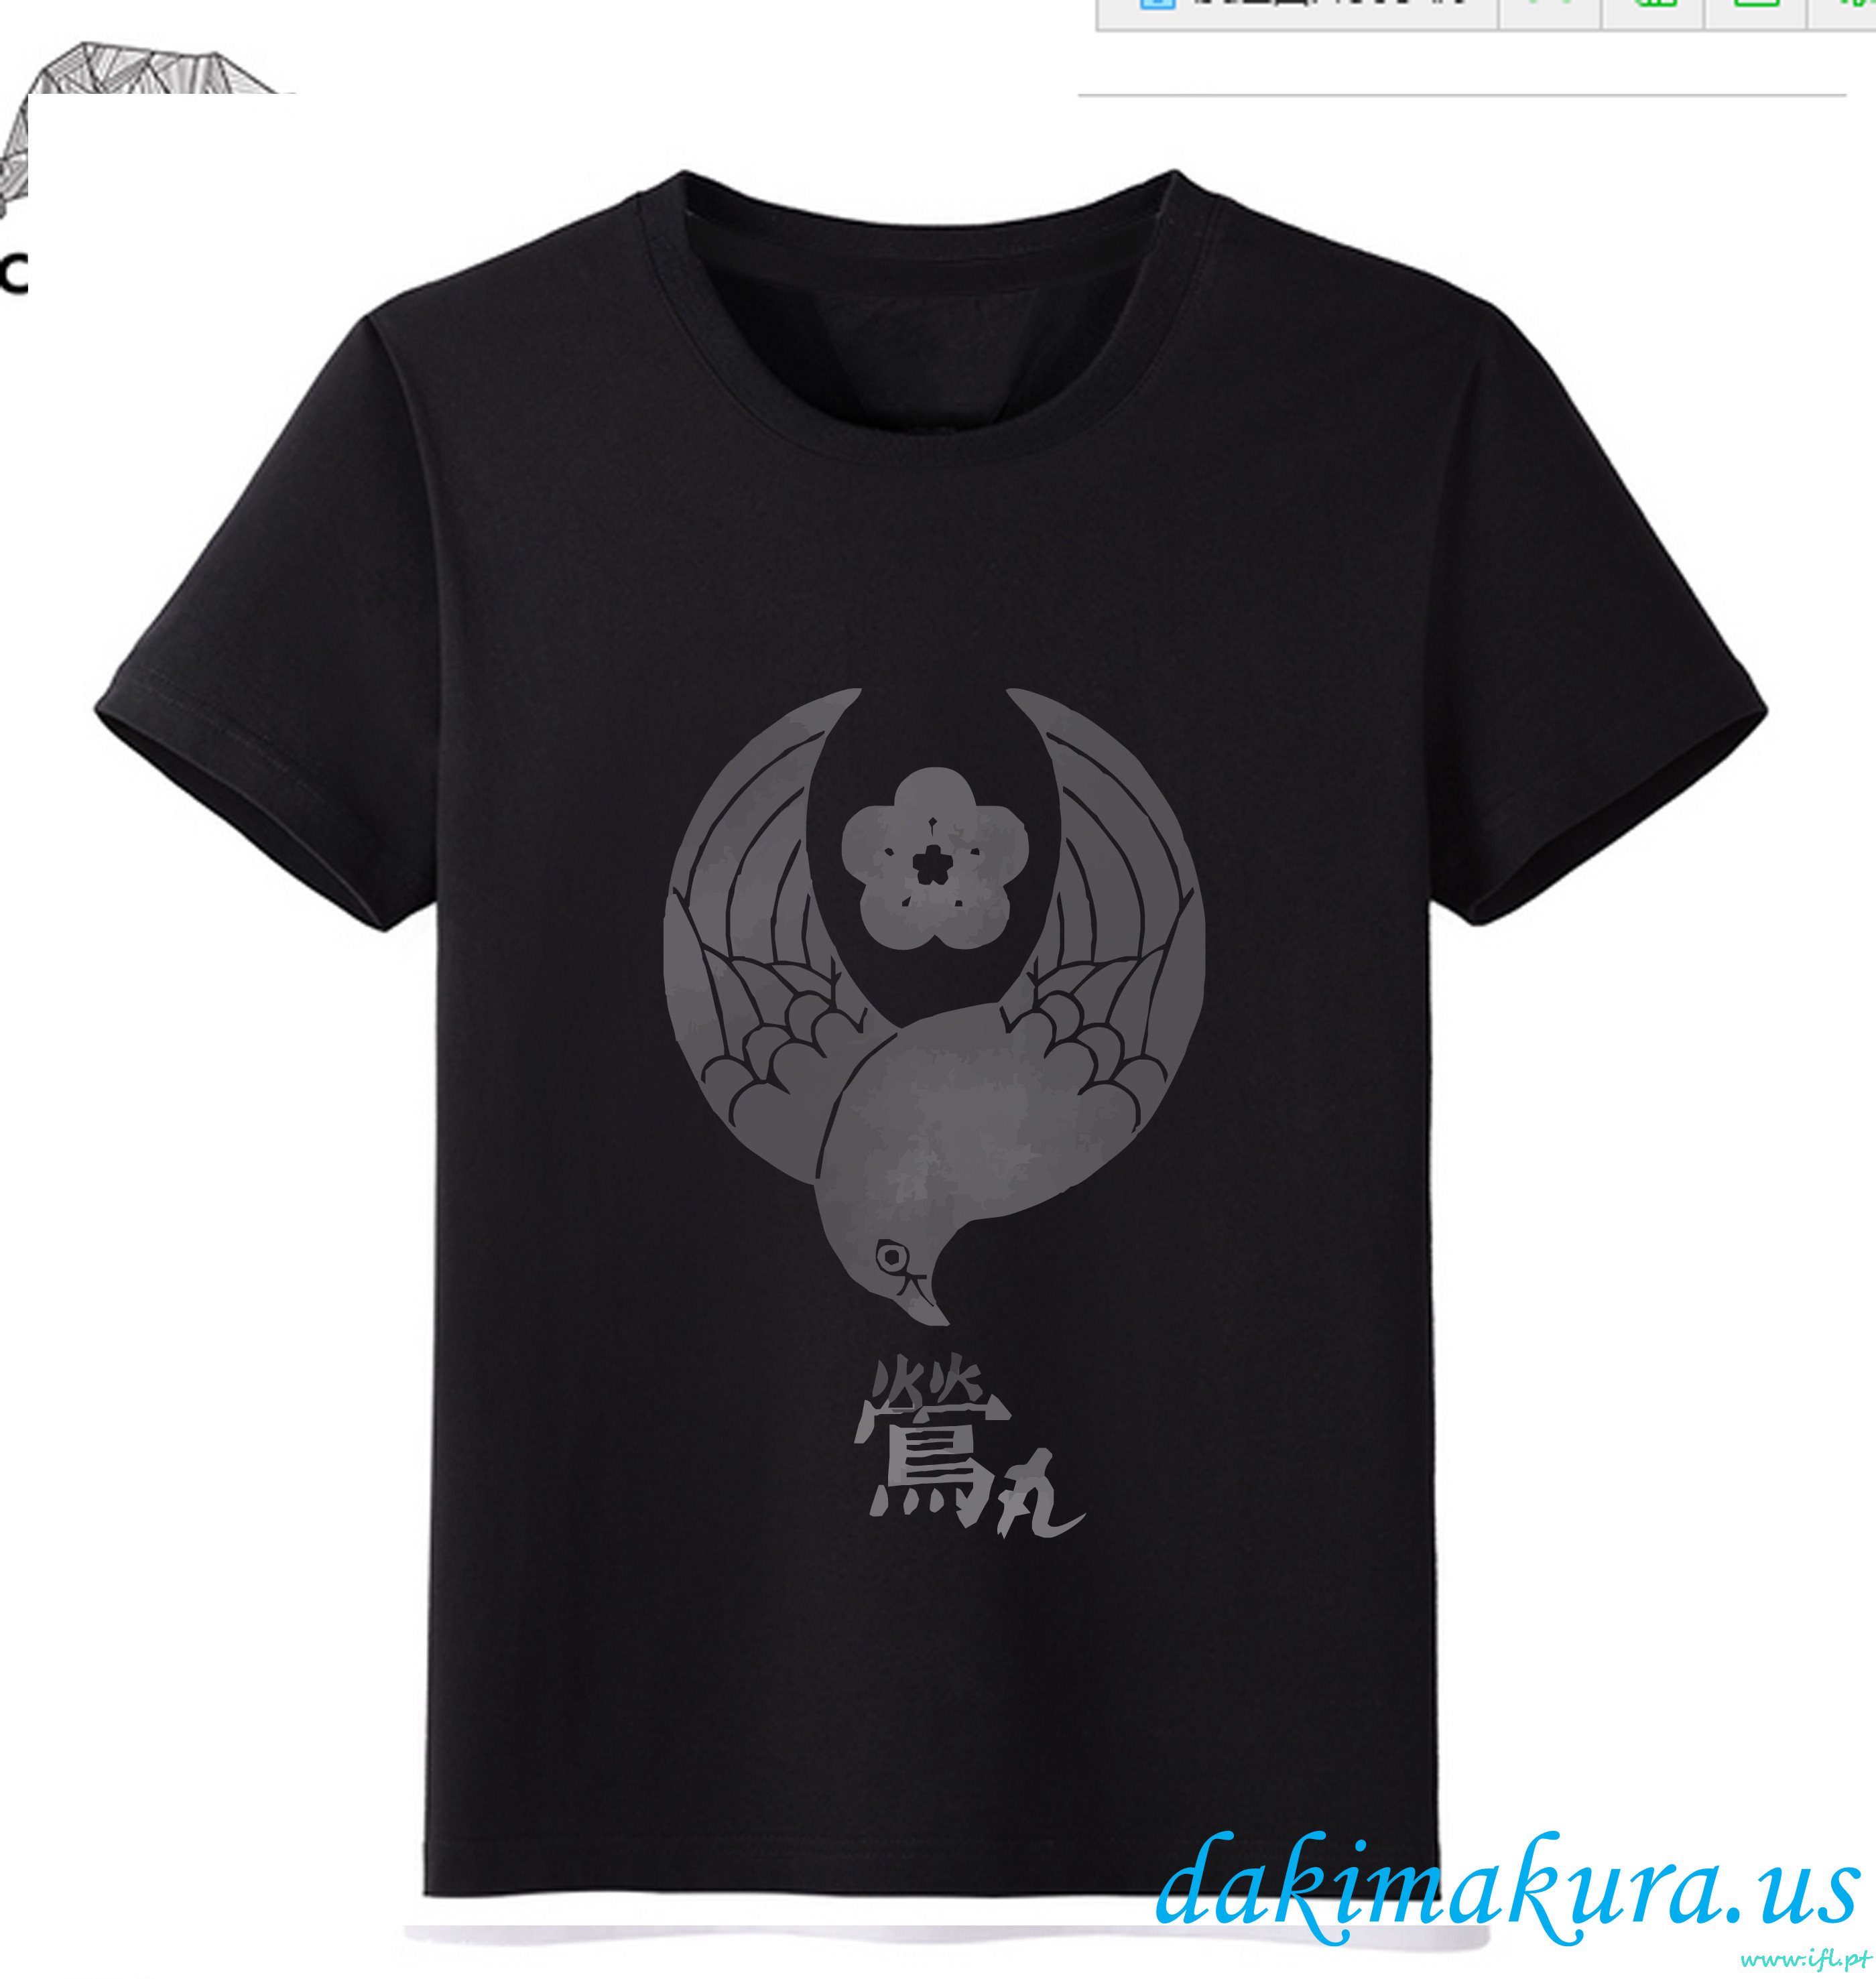 φθηνά μαύρα - Touken Ranbu σε απευθείας σύνδεση άνδρες Anime μόδα T-shirts από το εργοστάσιο της Κίνας